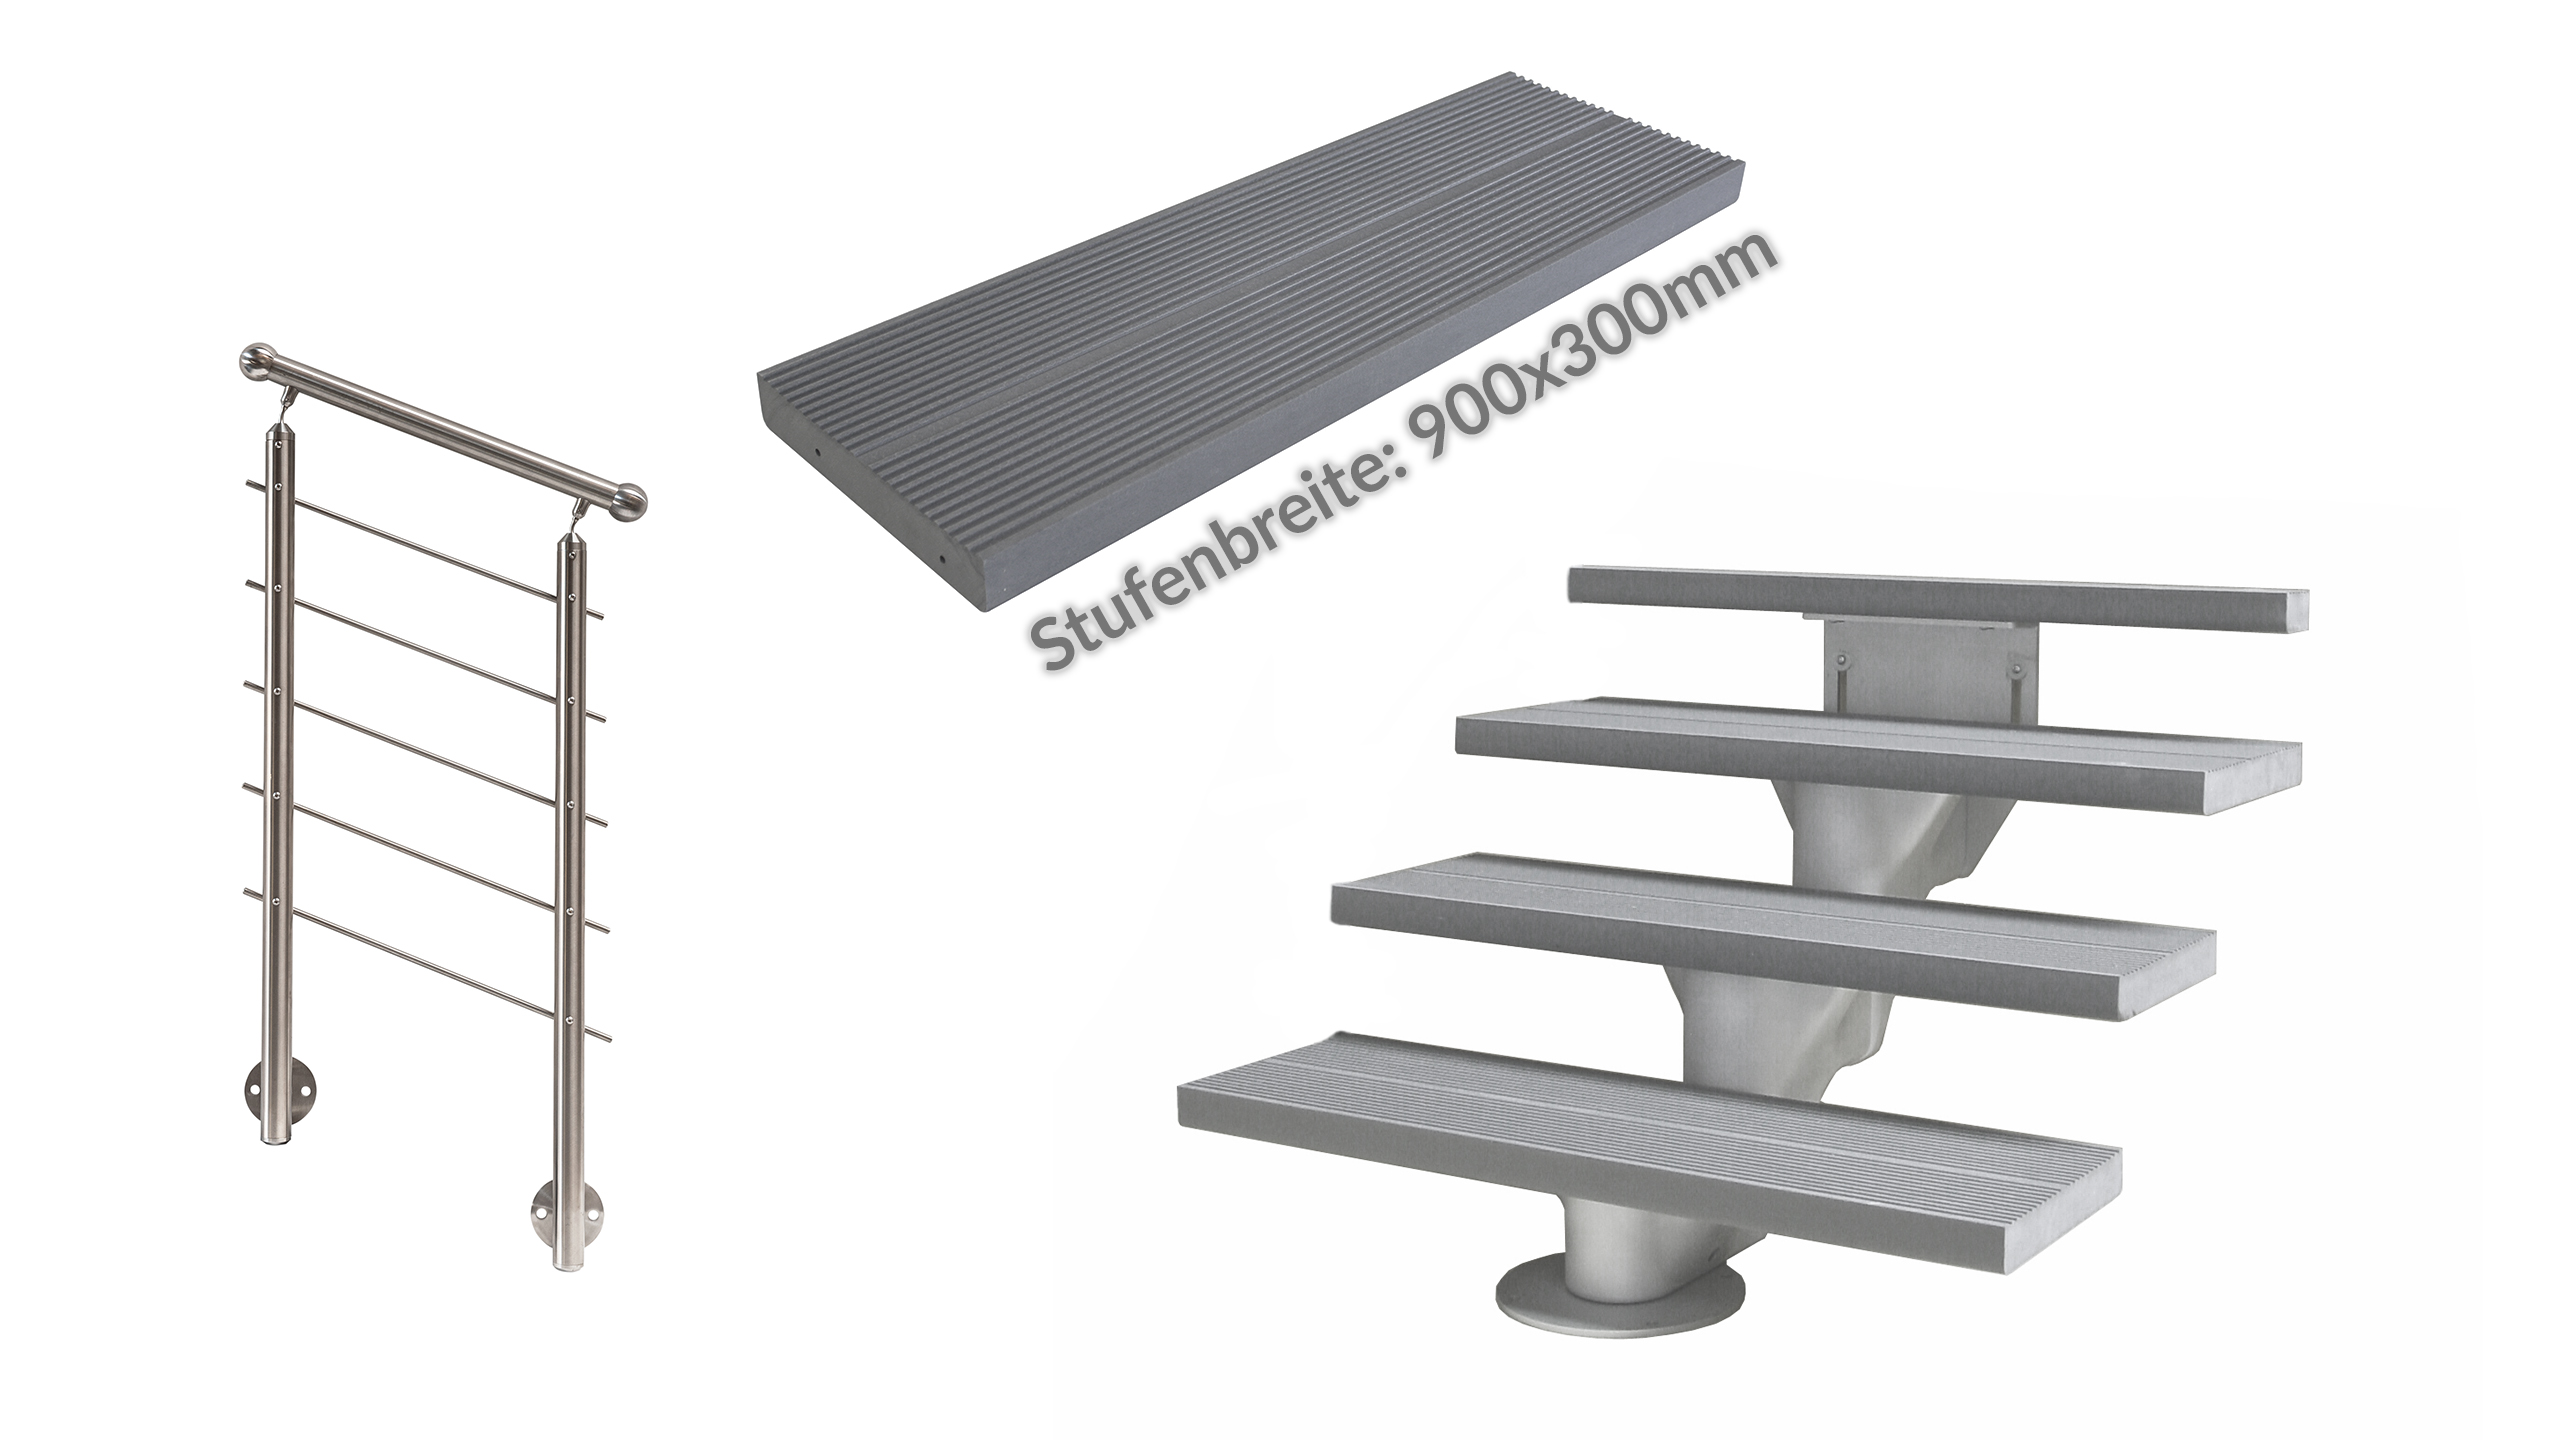 ÖkoStep 260 900x300mm + MegaTec Geländer + Stufen Kunststoff grau Set